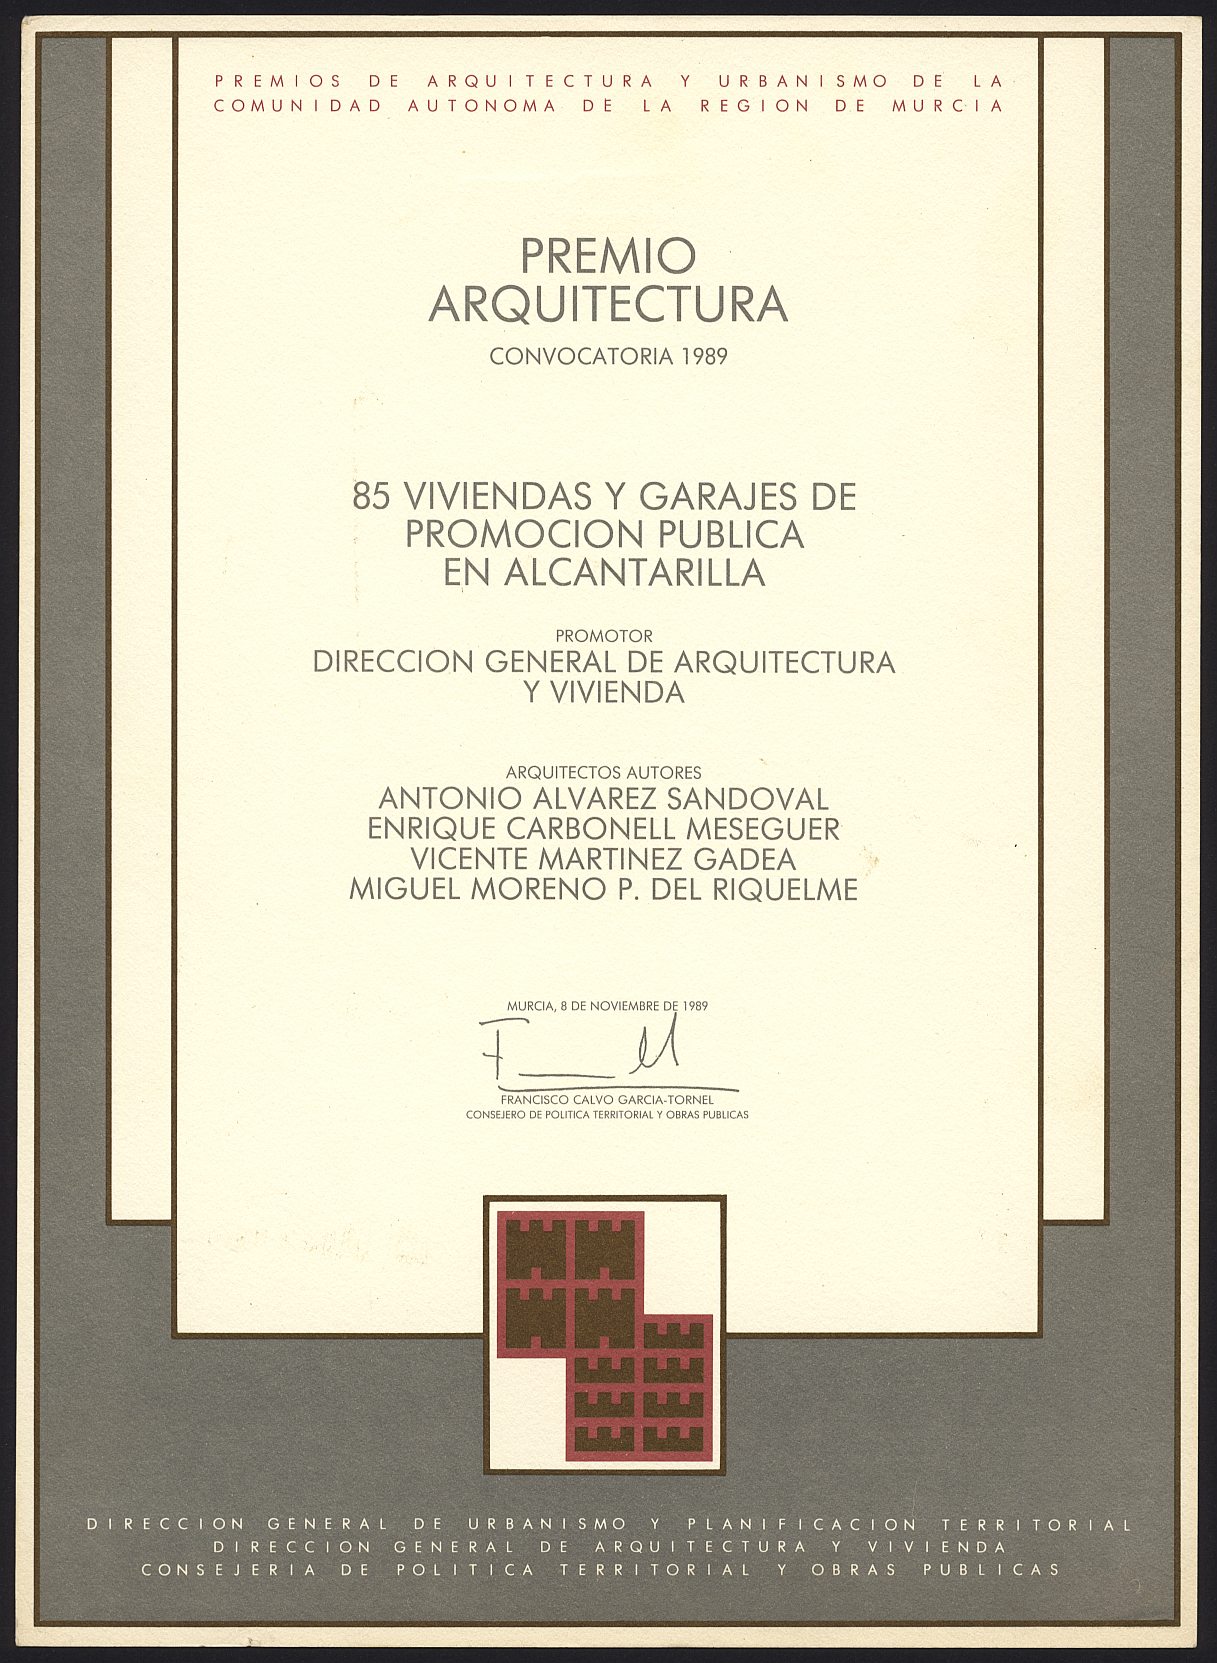 Diploma de Premio de Arquitectura a Enrique Carbonell por el proyecto de 85 viviendas y garajes en Alcantarilla, de los Premios de Urbanismo y Arquitectura de la Región de Murcia.